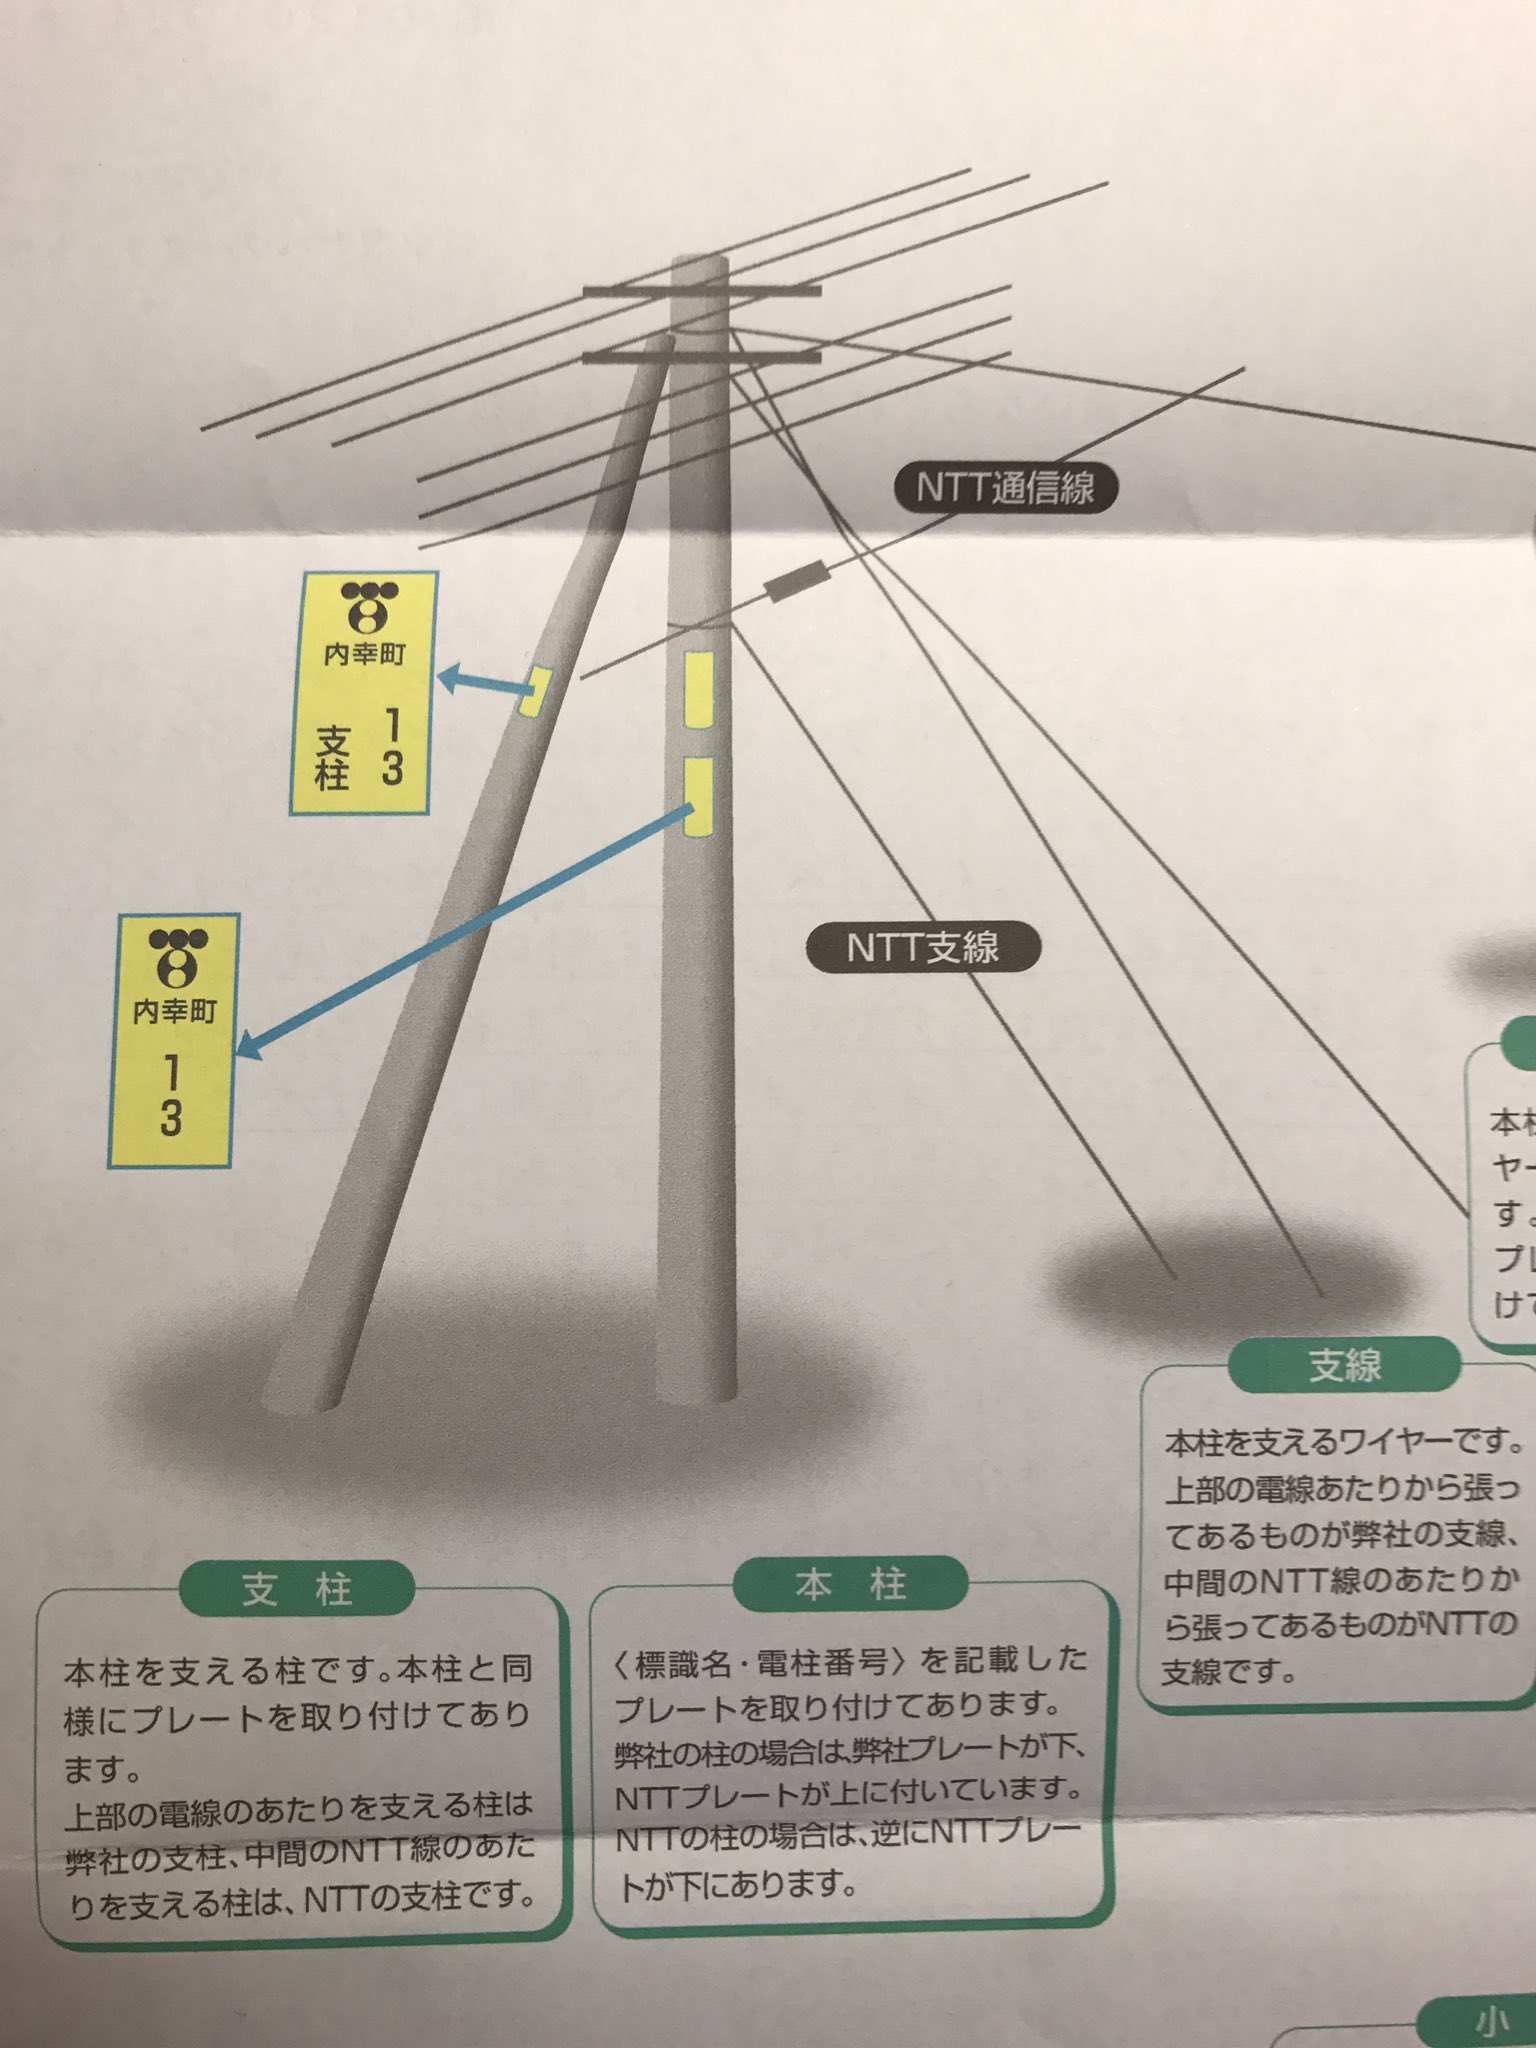 谷謙二 Tani Kenji A Twitter 東京電力からの手紙に 電柱の説明があった 東京電力のプレートが下 Nttのプレートが上の場合は東京 電力の電柱 逆ならnttの電柱だそうだ